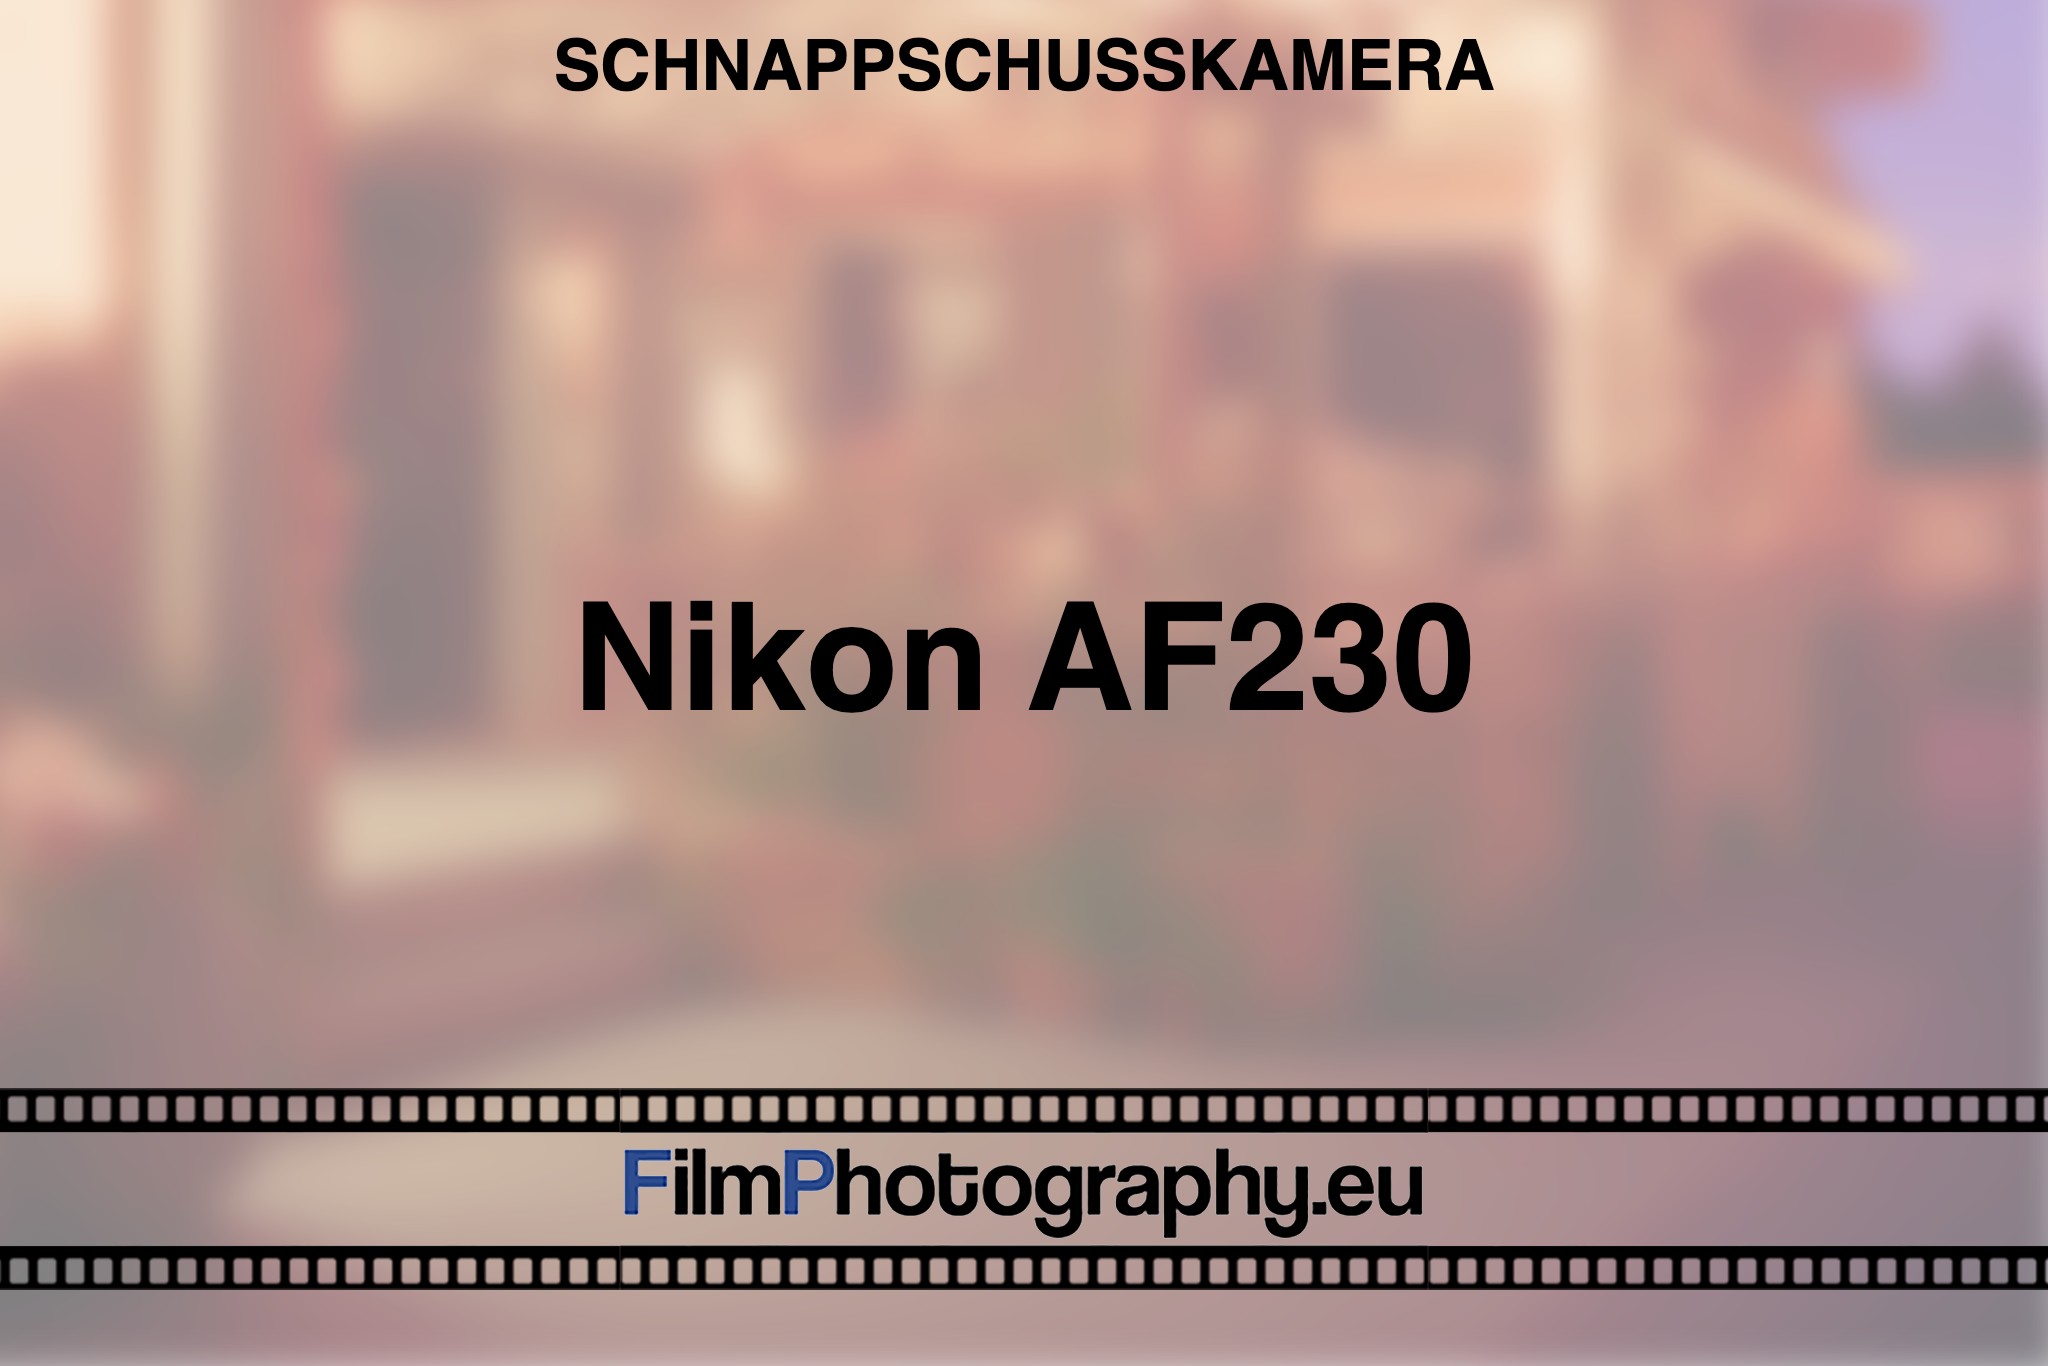 nikon-af230-schnappschusskamera-bnv